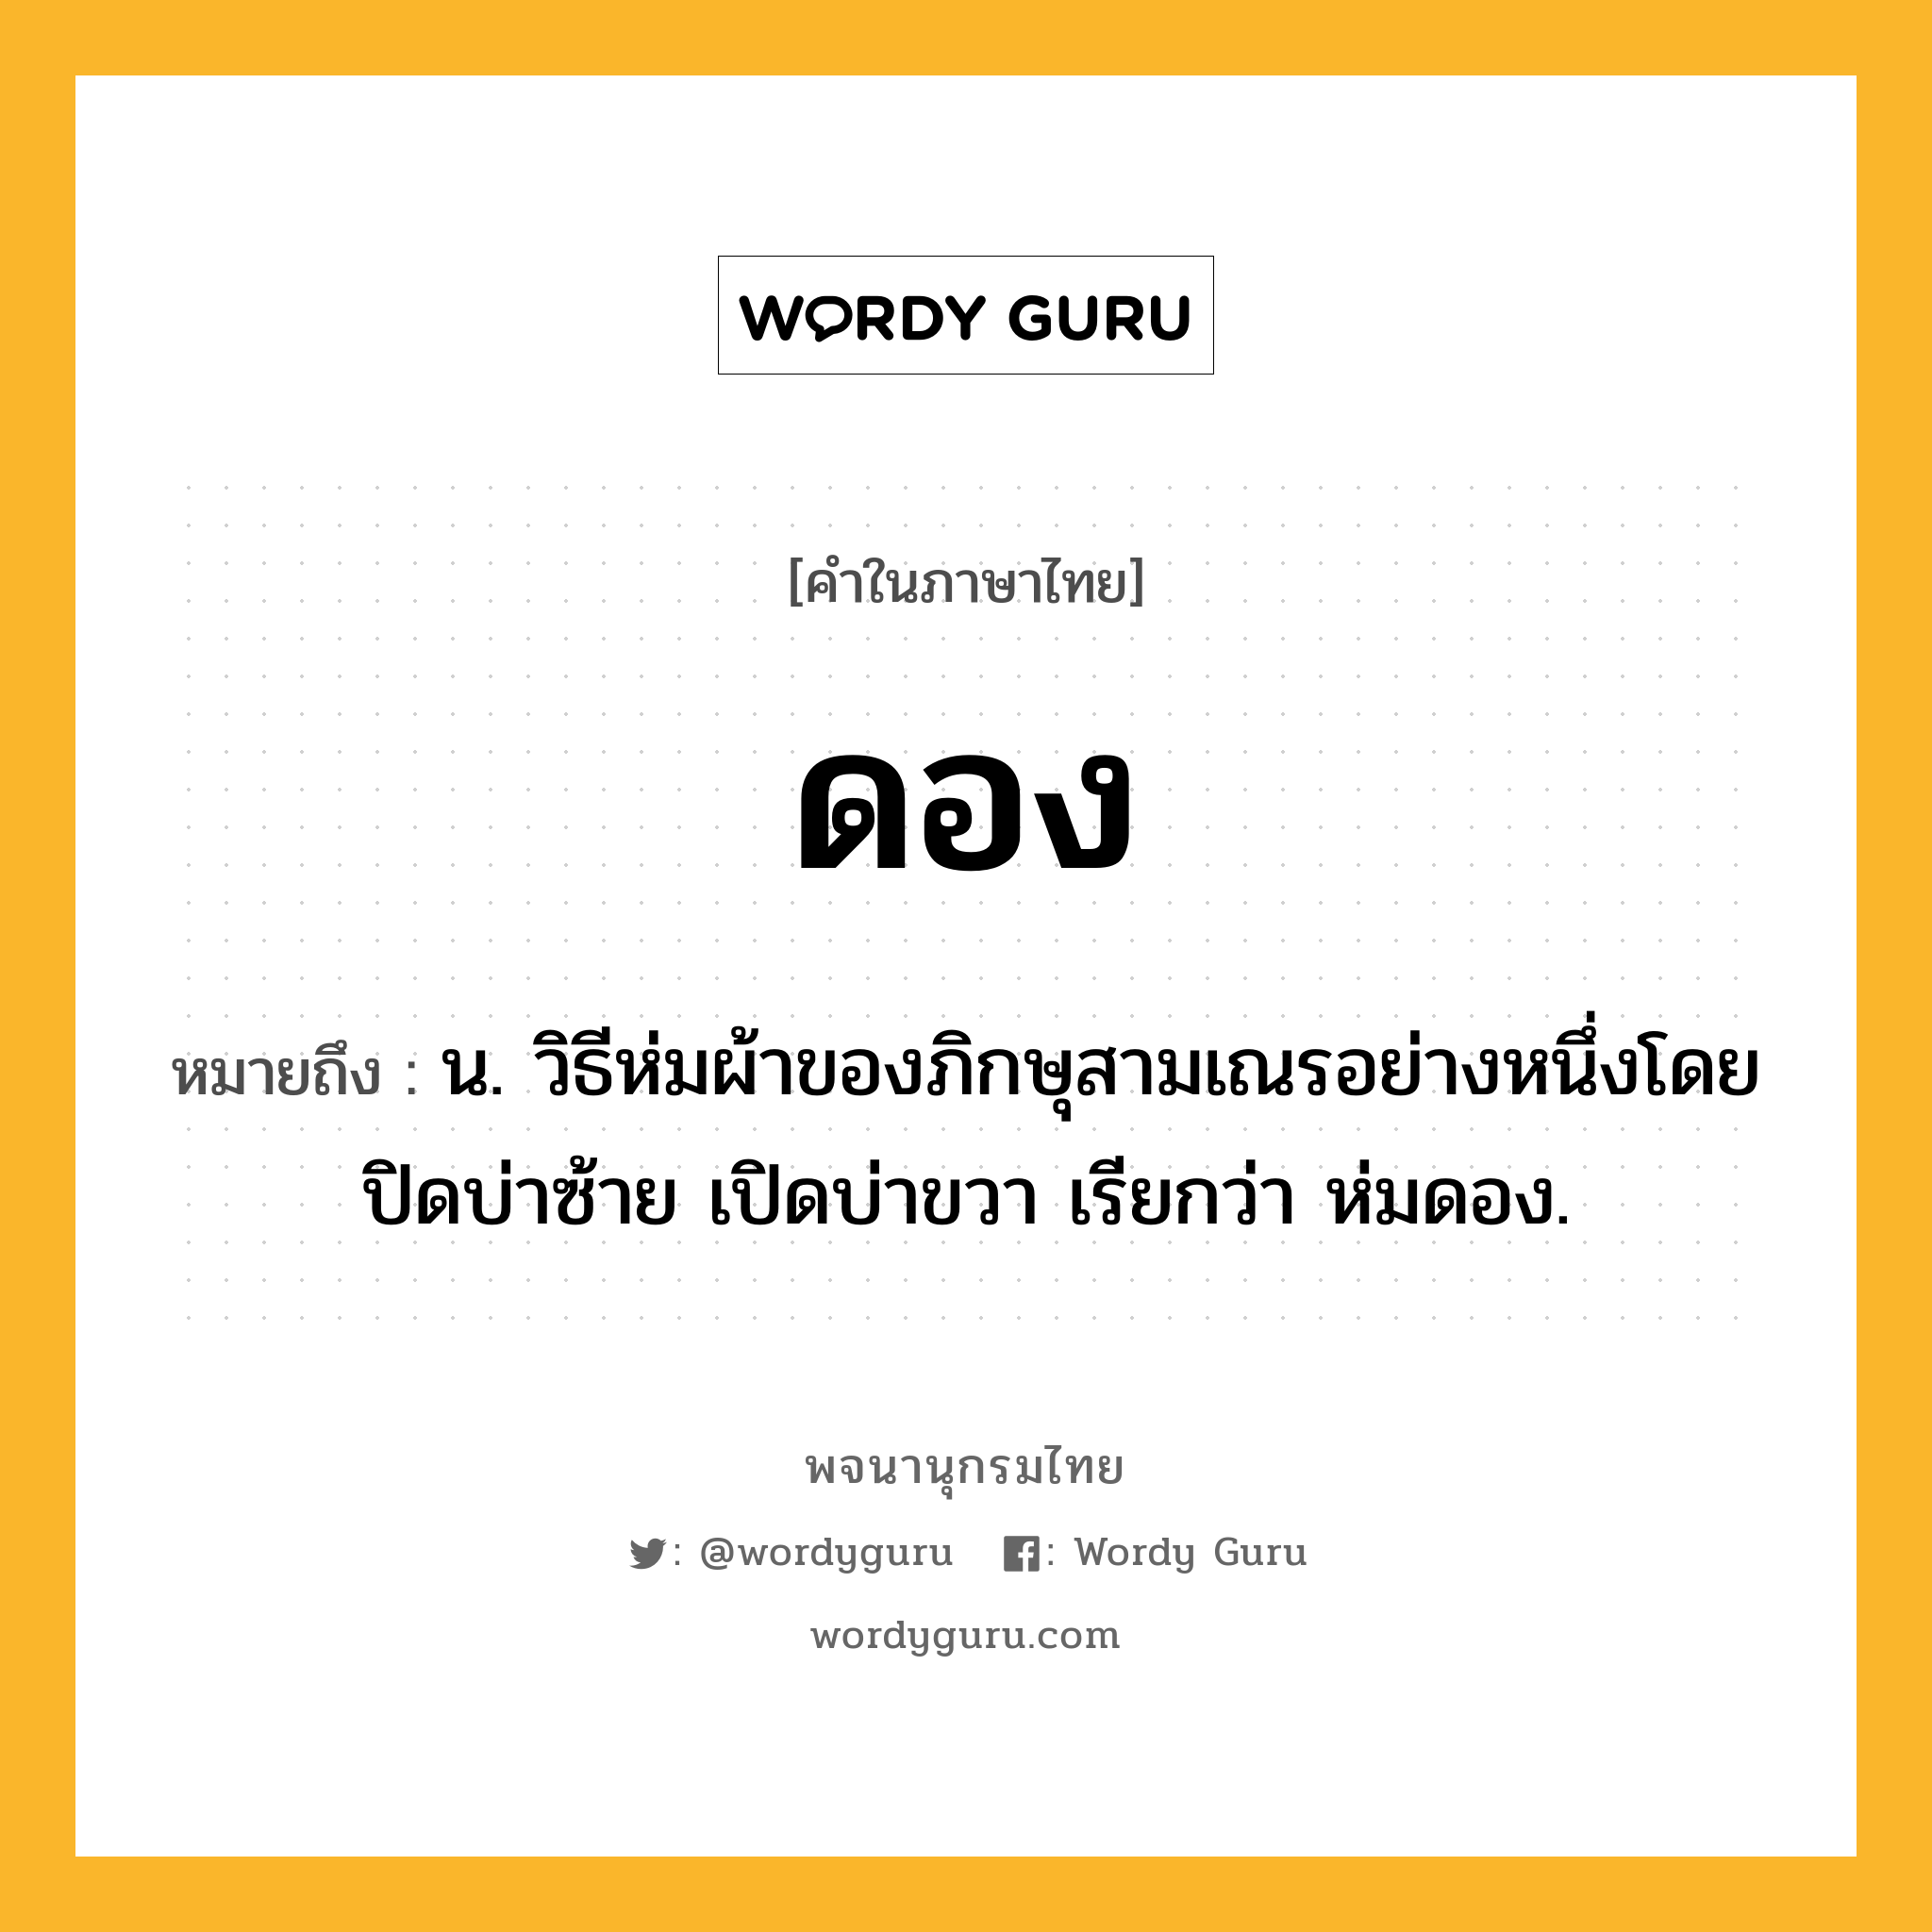 ดอง หมายถึงอะไร?, คำในภาษาไทย ดอง หมายถึง น. วิธีห่มผ้าของภิกษุสามเณรอย่างหนึ่งโดยปิดบ่าซ้าย เปิดบ่าขวา เรียกว่า ห่มดอง.